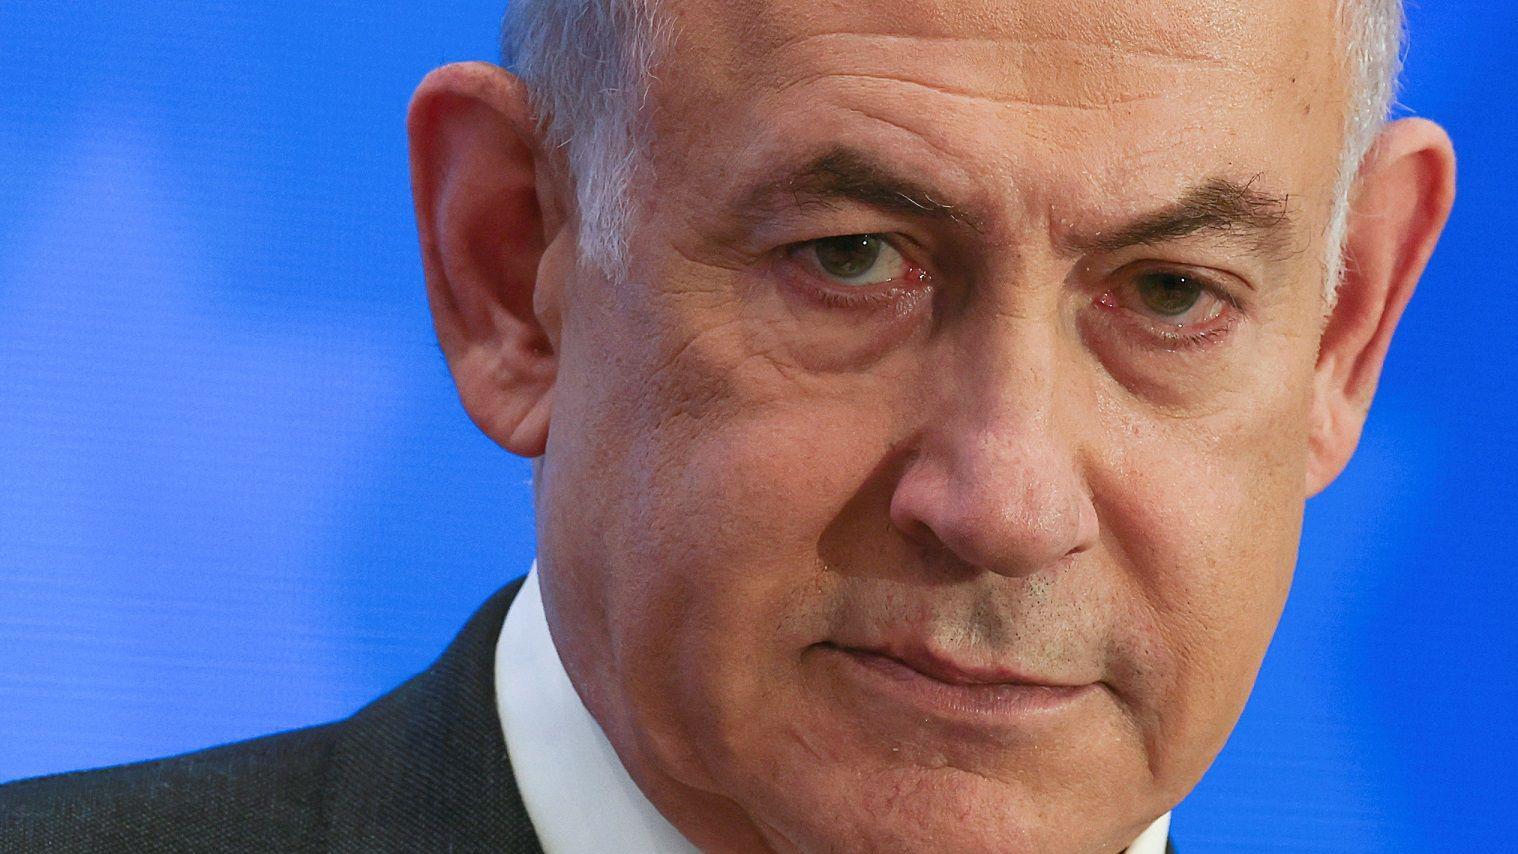 رئيس الوزراء الإسرائيلي بنيامين نتانياهو 